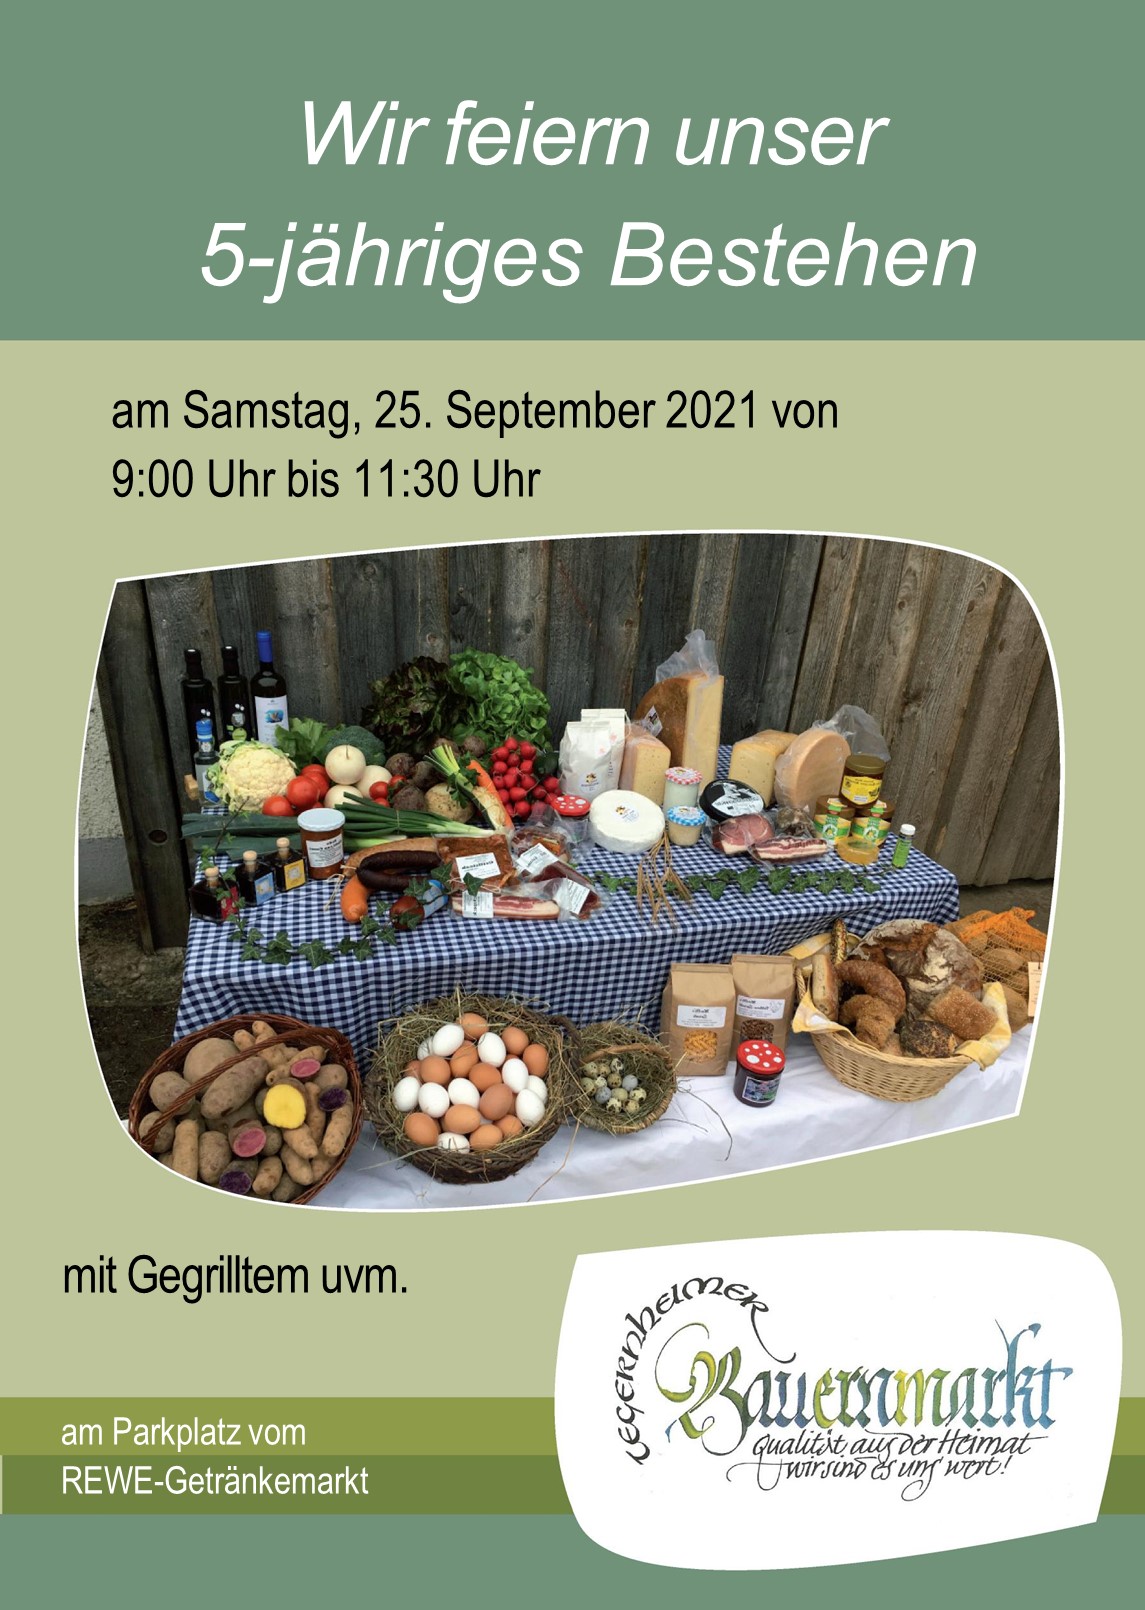 5 Jahre Bauernmarkt Tegernheim am 25.09.2021! 